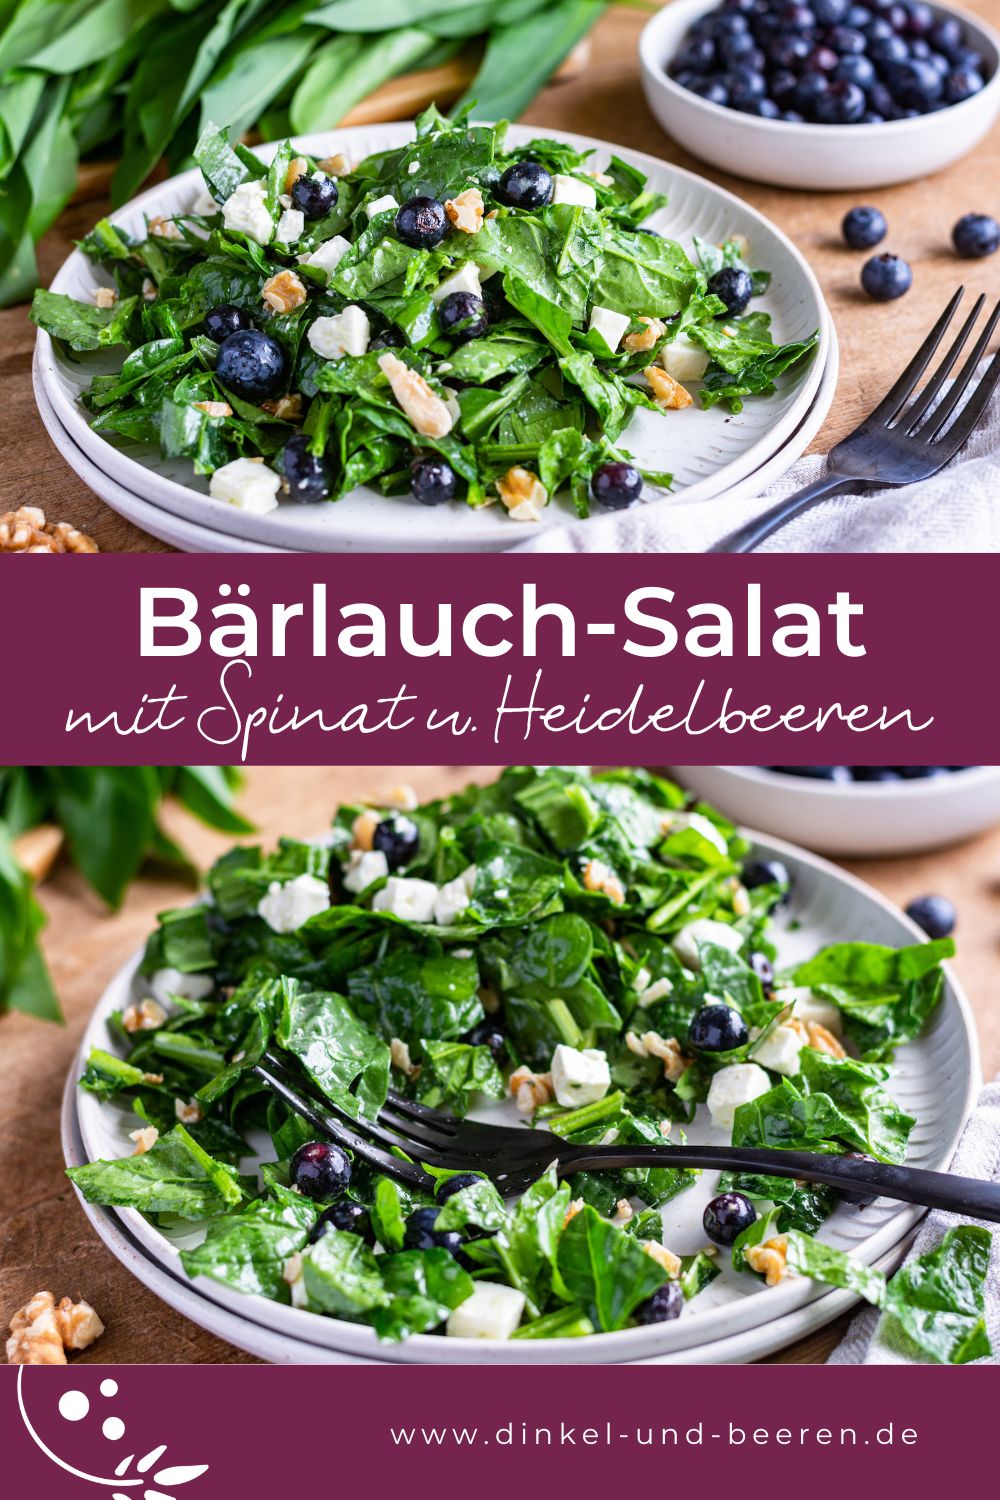 Pinterest-Grafik mit zwei Fotos vom Bärlauch-Salat, dazu der Schriftzug "Bärlauch-Salat mit Spinat und Heidelbeeren".